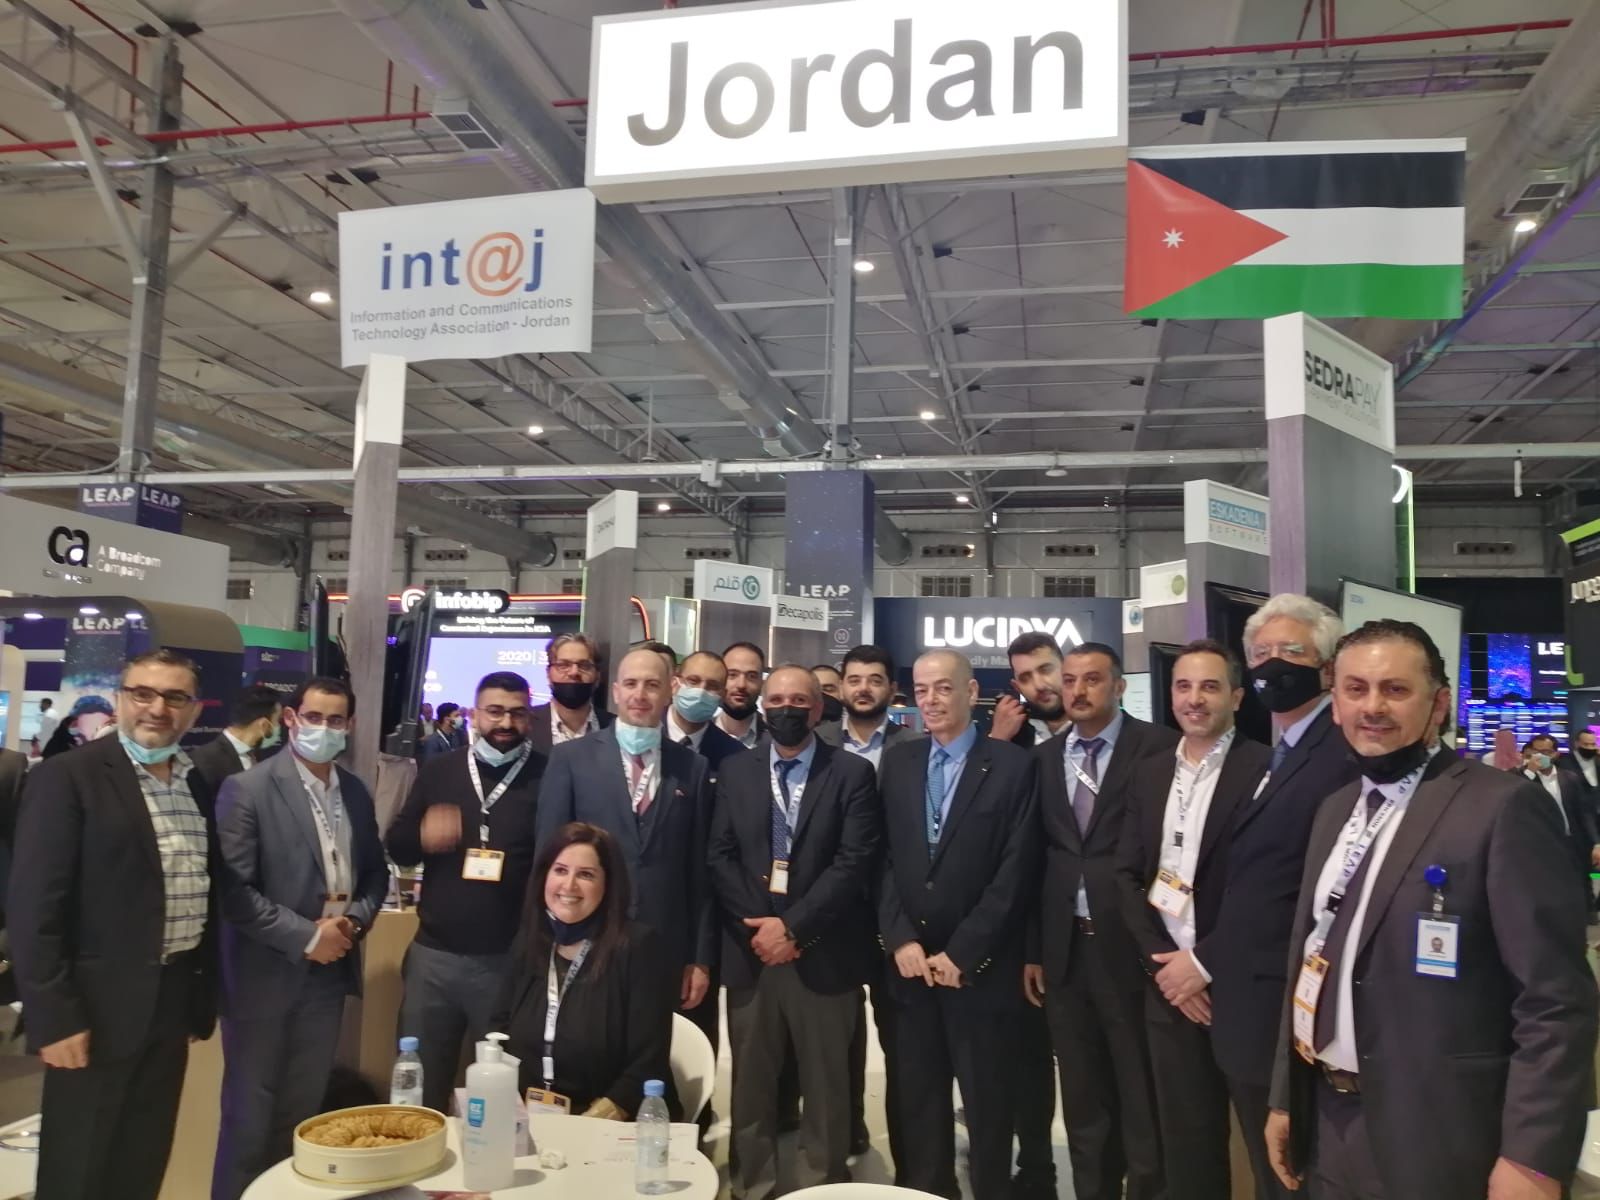 《انتاج》 تُقيم جناحاً أردنيا بمشاركة 16 شركة محلية في مؤتمر ومعرض Leap للتقنية بالسعودية》